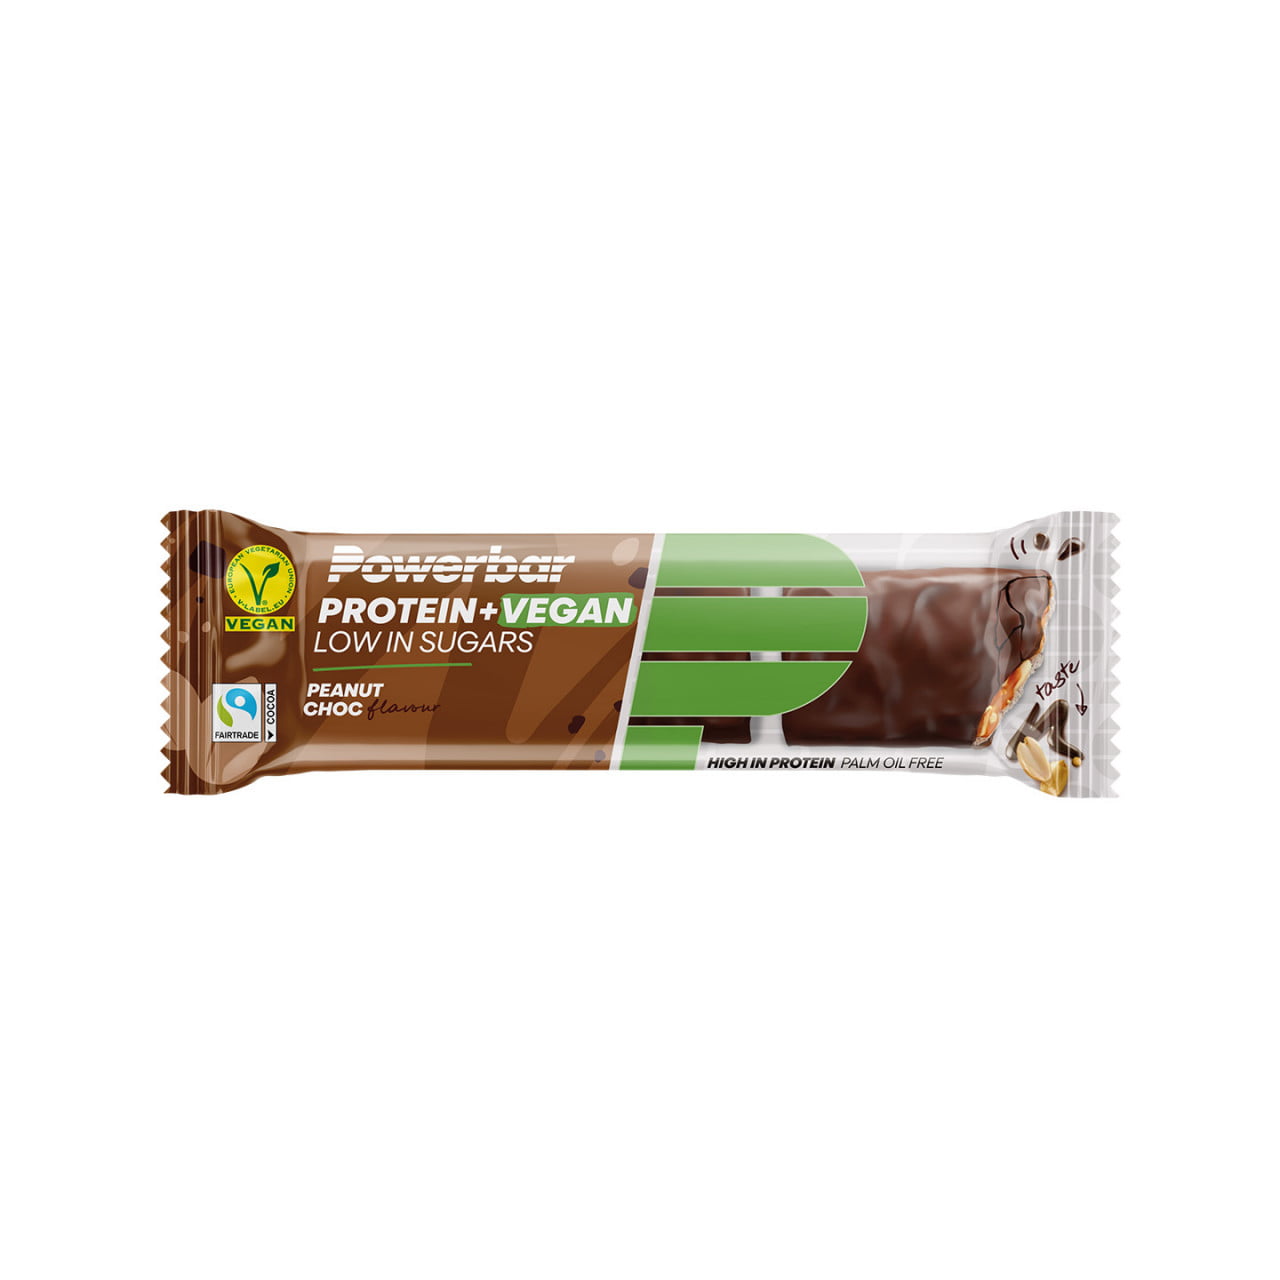 Protéines+ vegan Faible teneur en sucres Peanut Chocolate 12 St.